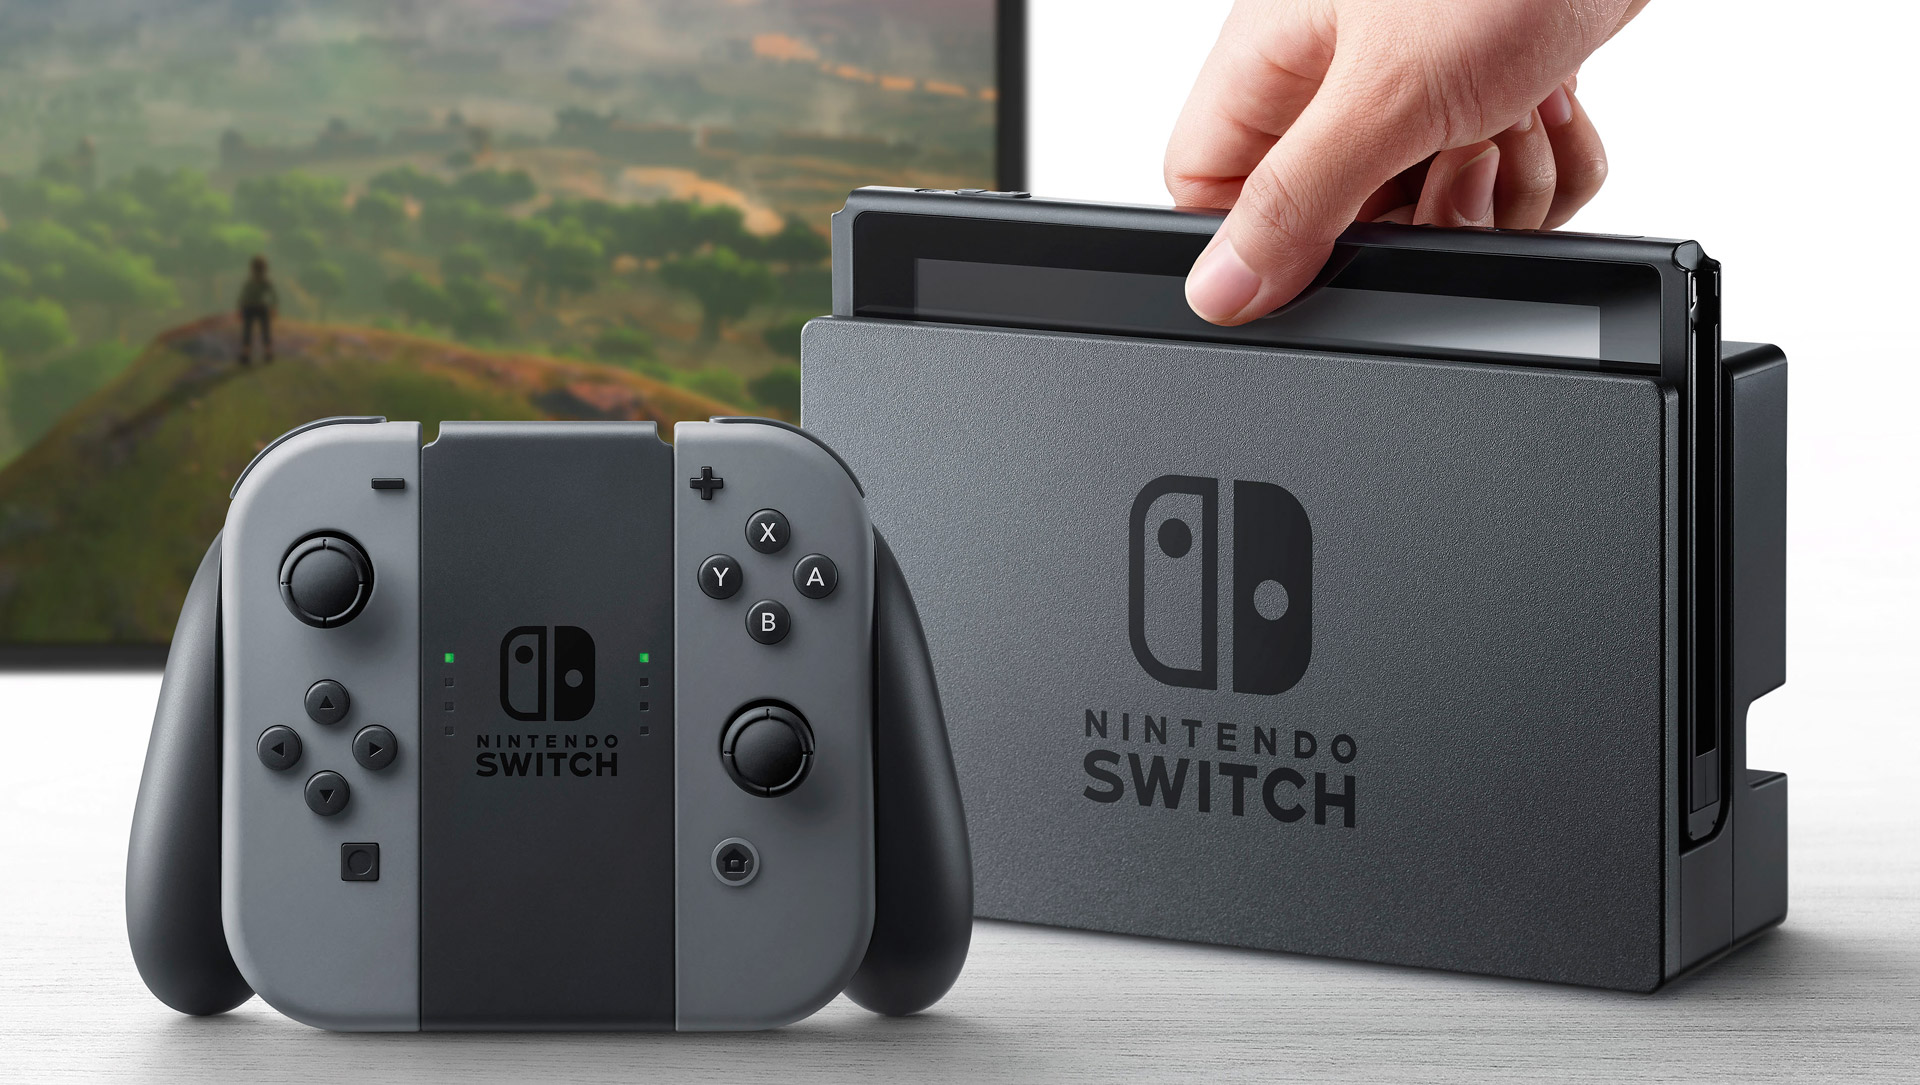 Nettspilling med Nintendo Switch blir billigere enn hos konkurrentene.